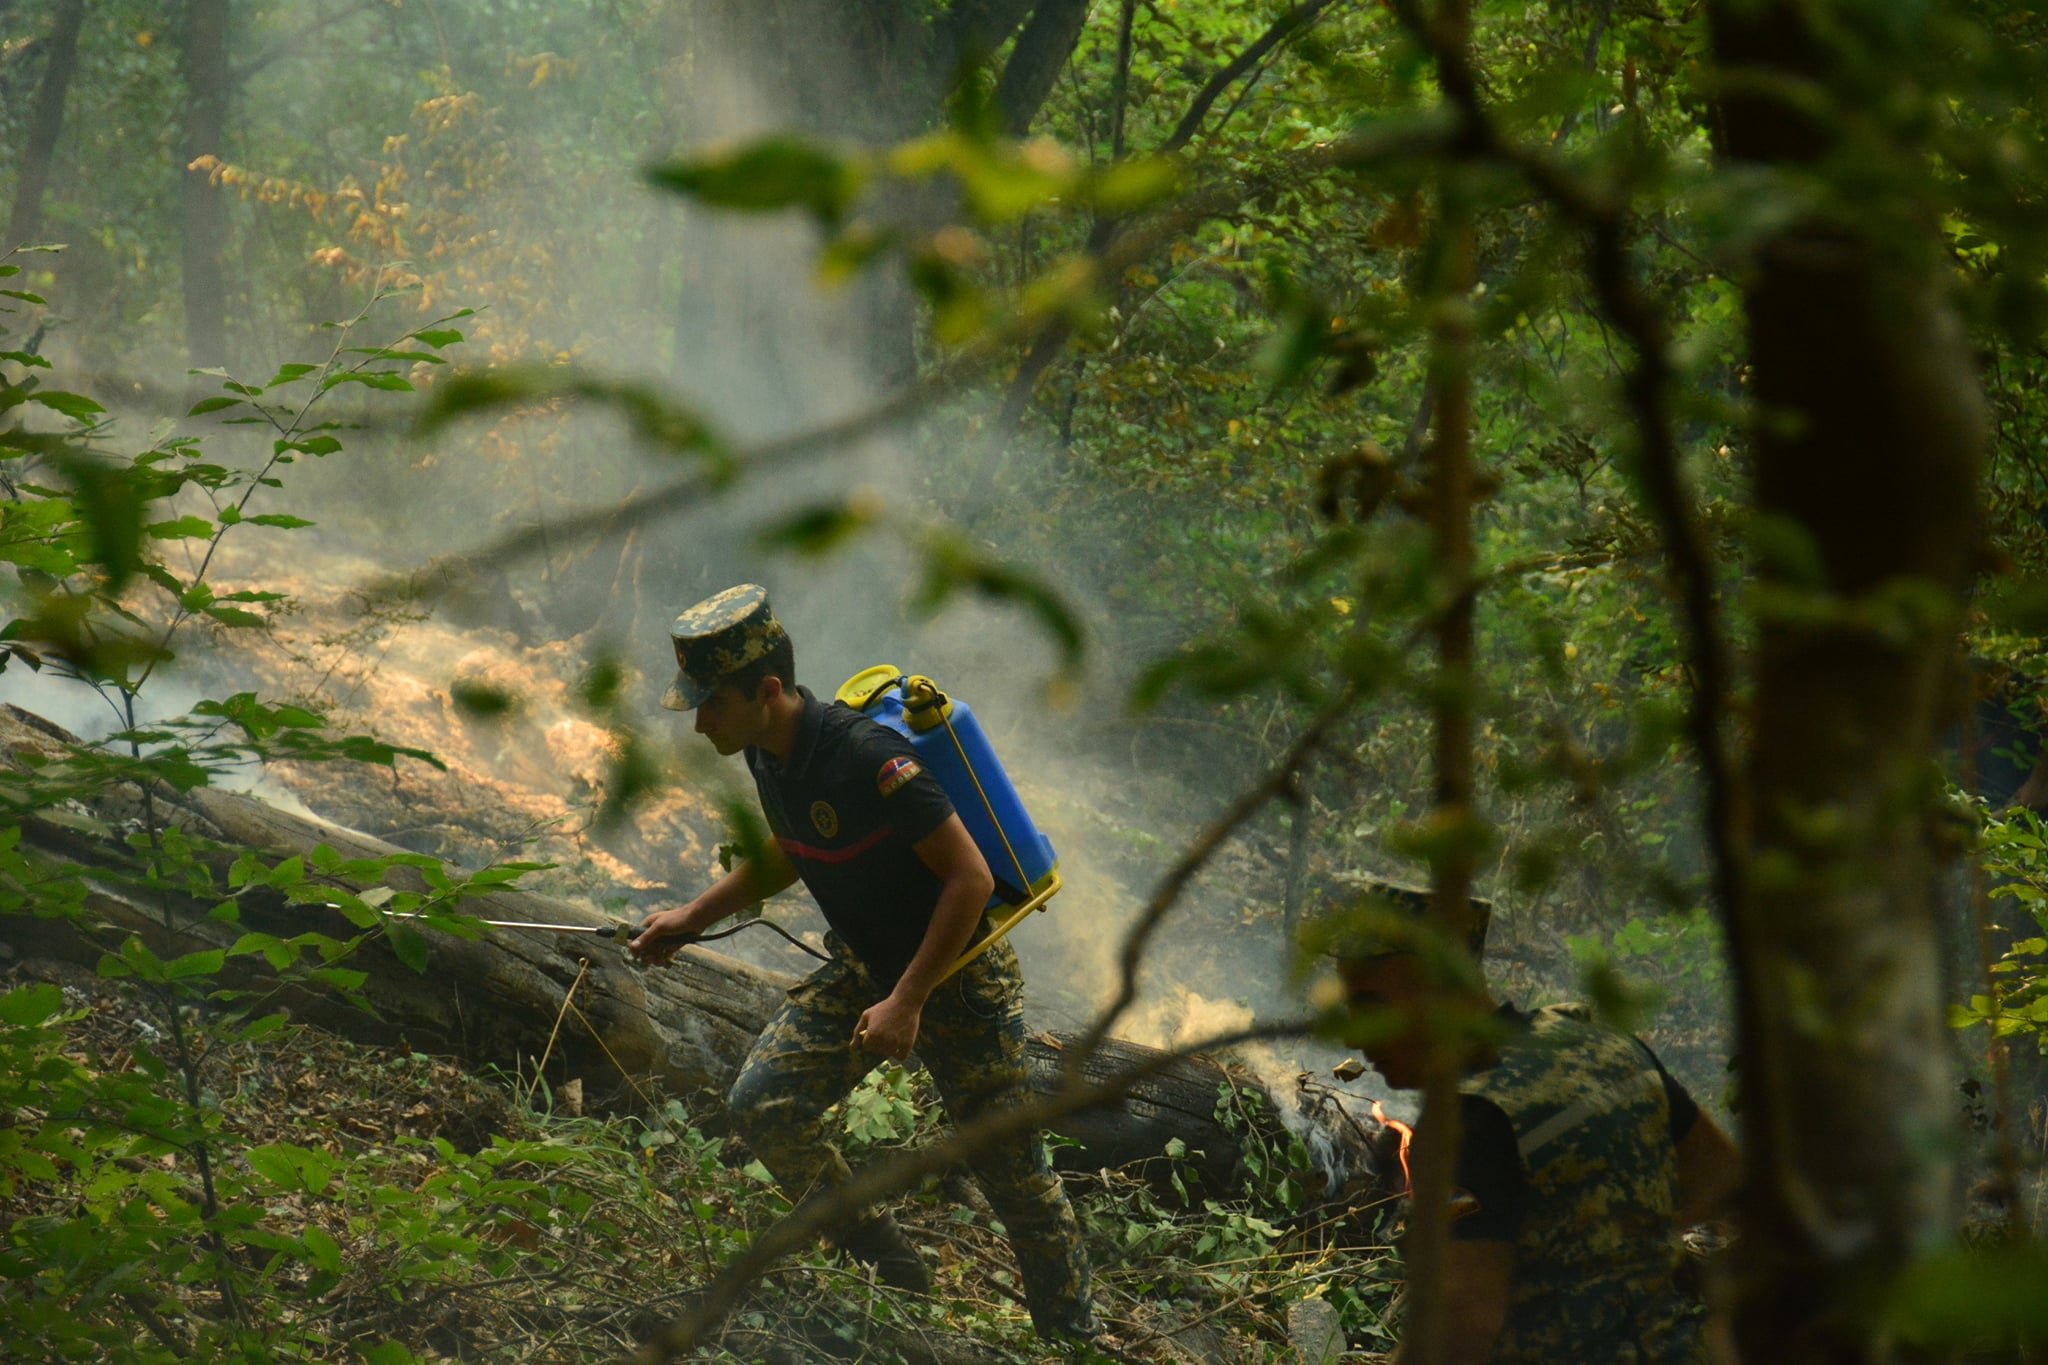 Մեկ շաբաթ է` Մարտակերտի Տոնաշեն համայնքի անտառներում բռնկված հրդեհը չի մարում. այրվել է մոտ 60 հա մակերես